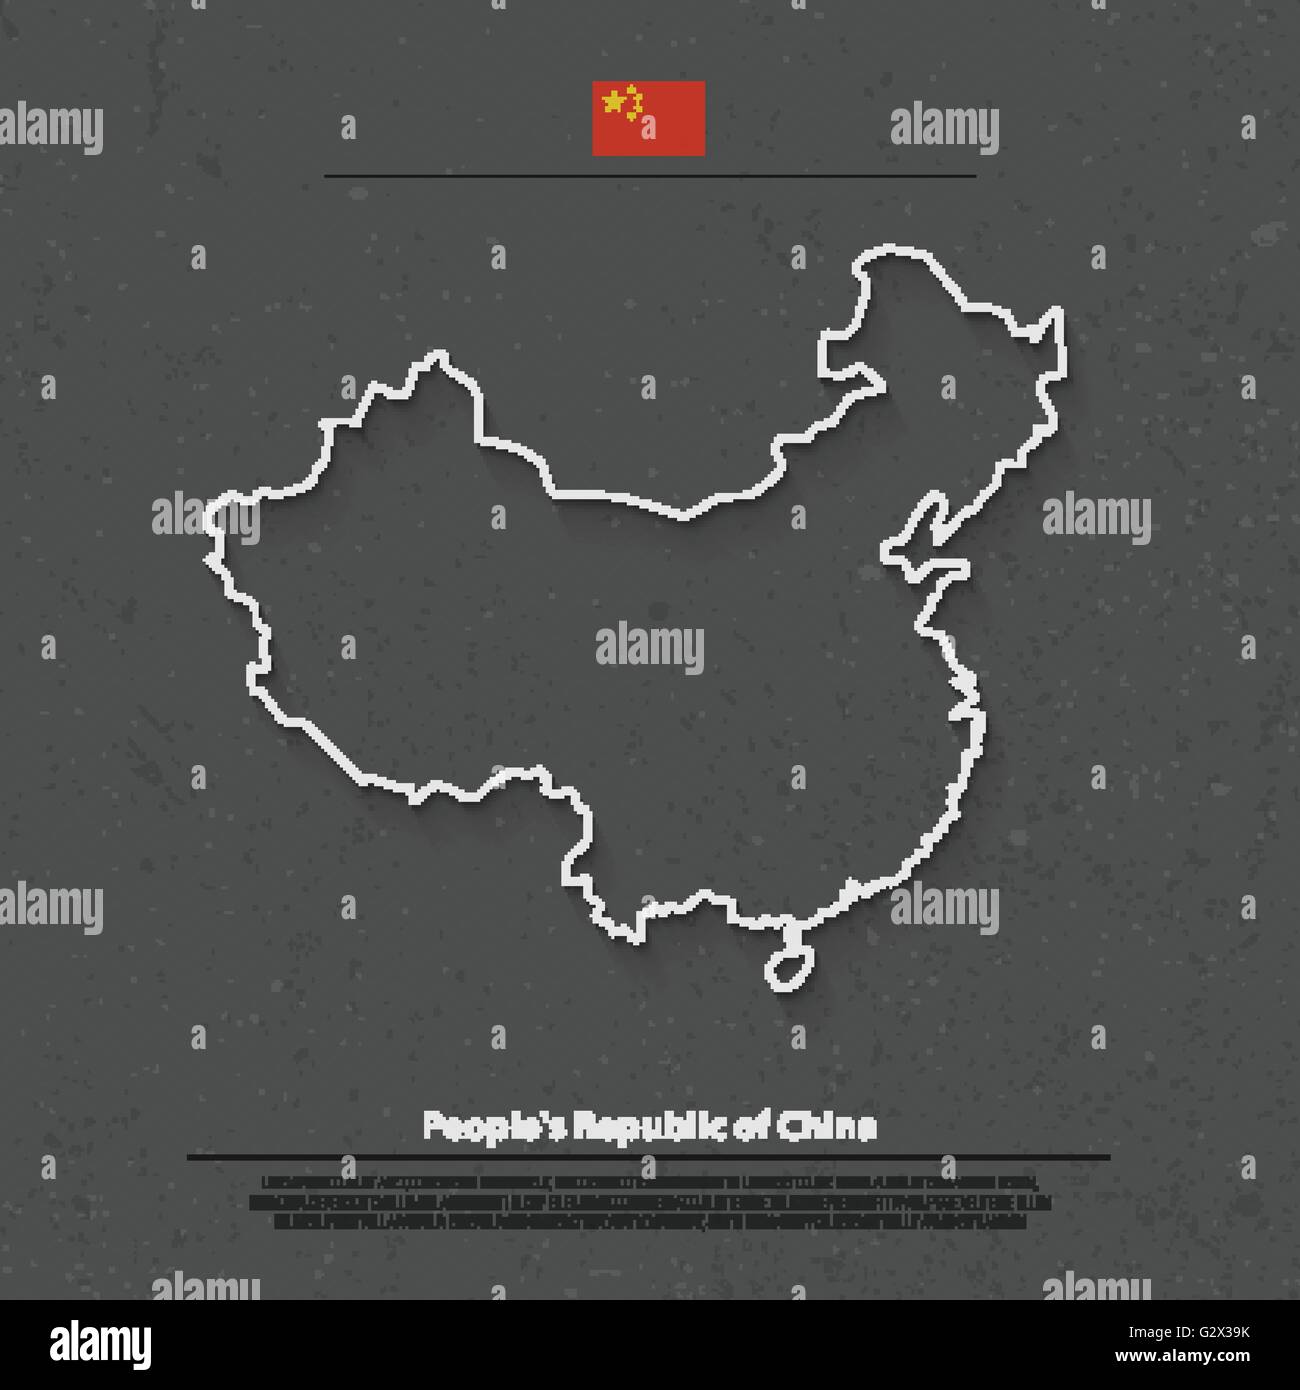 Volksrepublik China isoliert Karte und offizielle Flaggen-Icons. Vektor-Illustration chinesische politische Karte dünne Linie. Asiatischen Ländern Stock Vektor